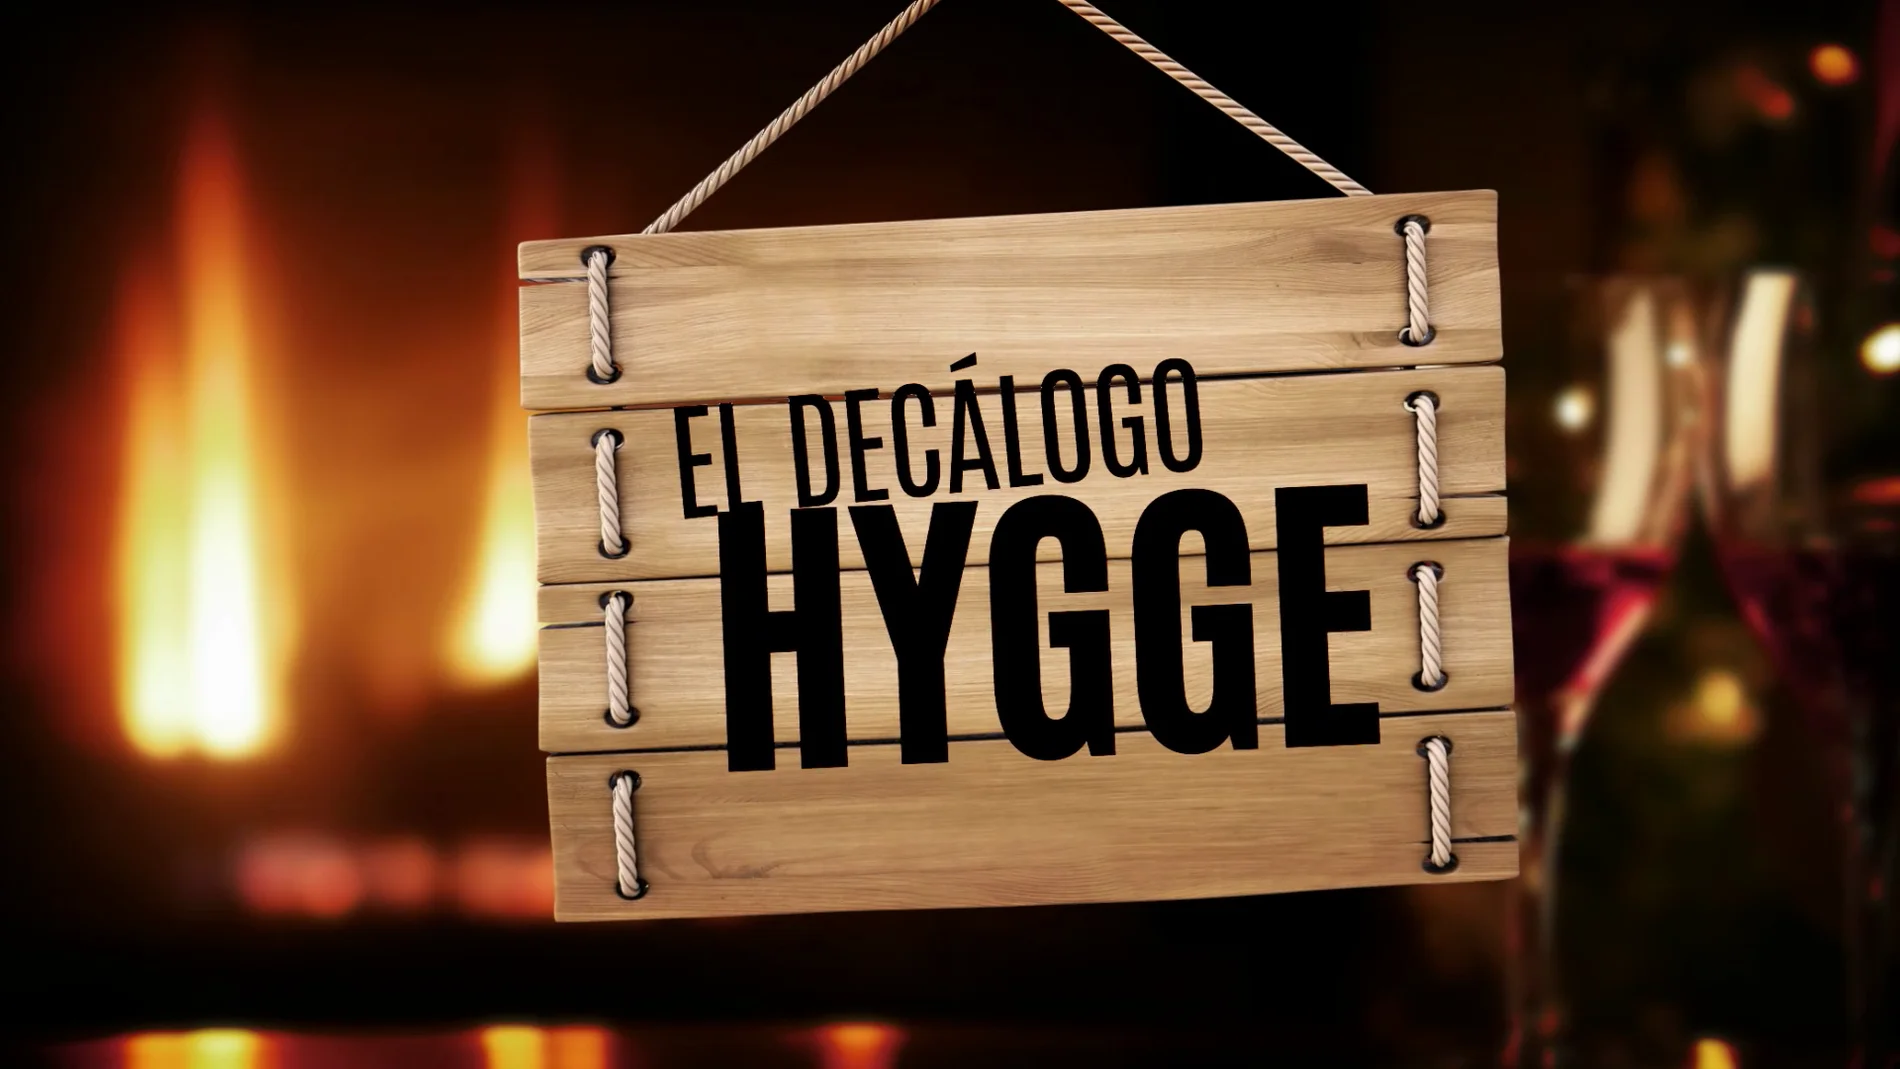 El decálogo Hygge